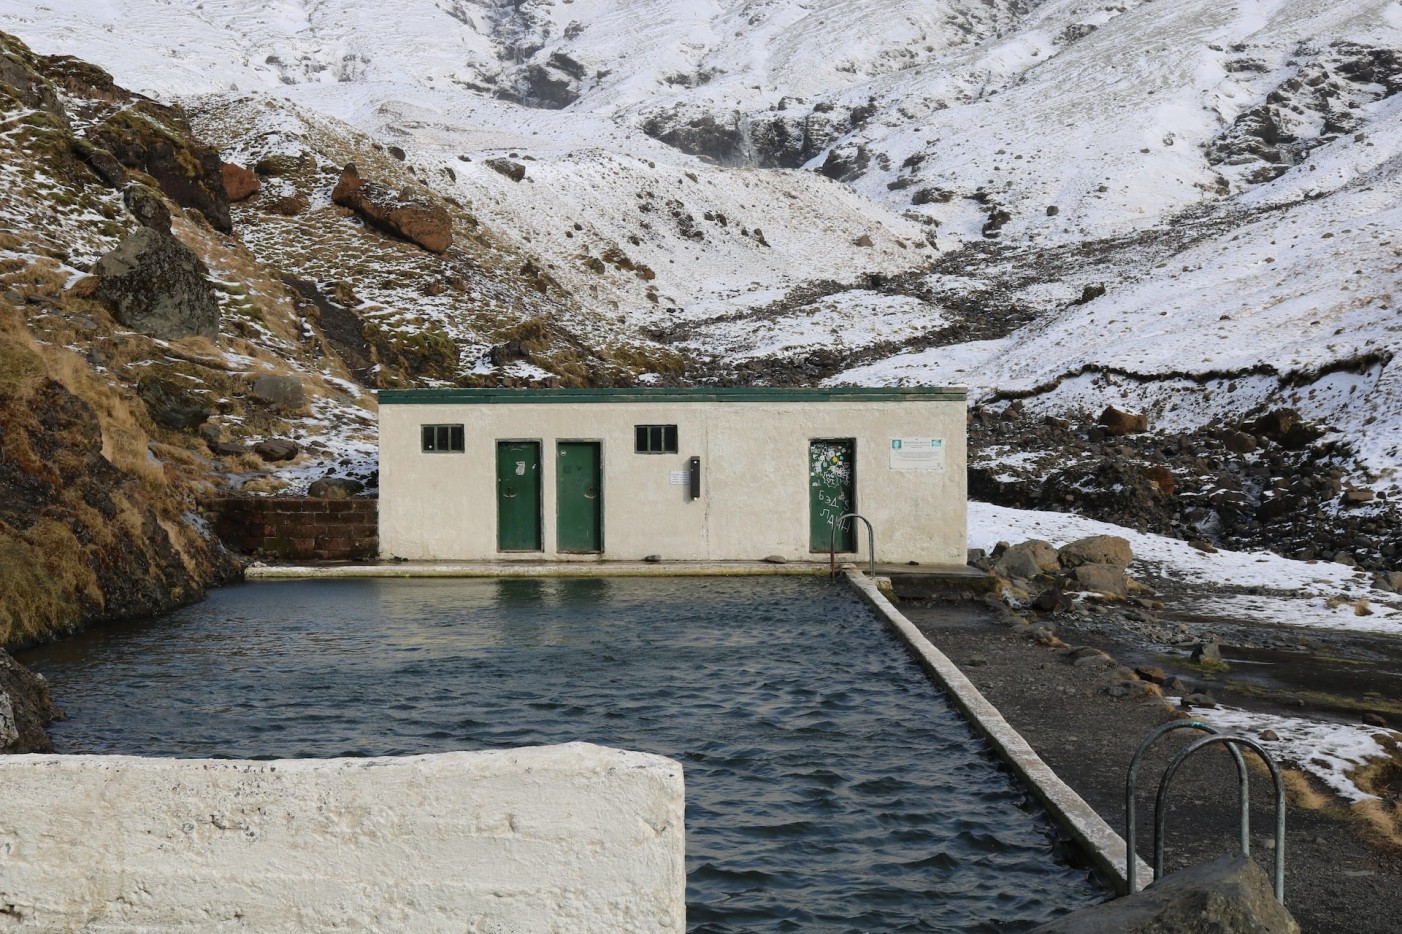 Seljavallalaug Izland termálvizes úszómedence